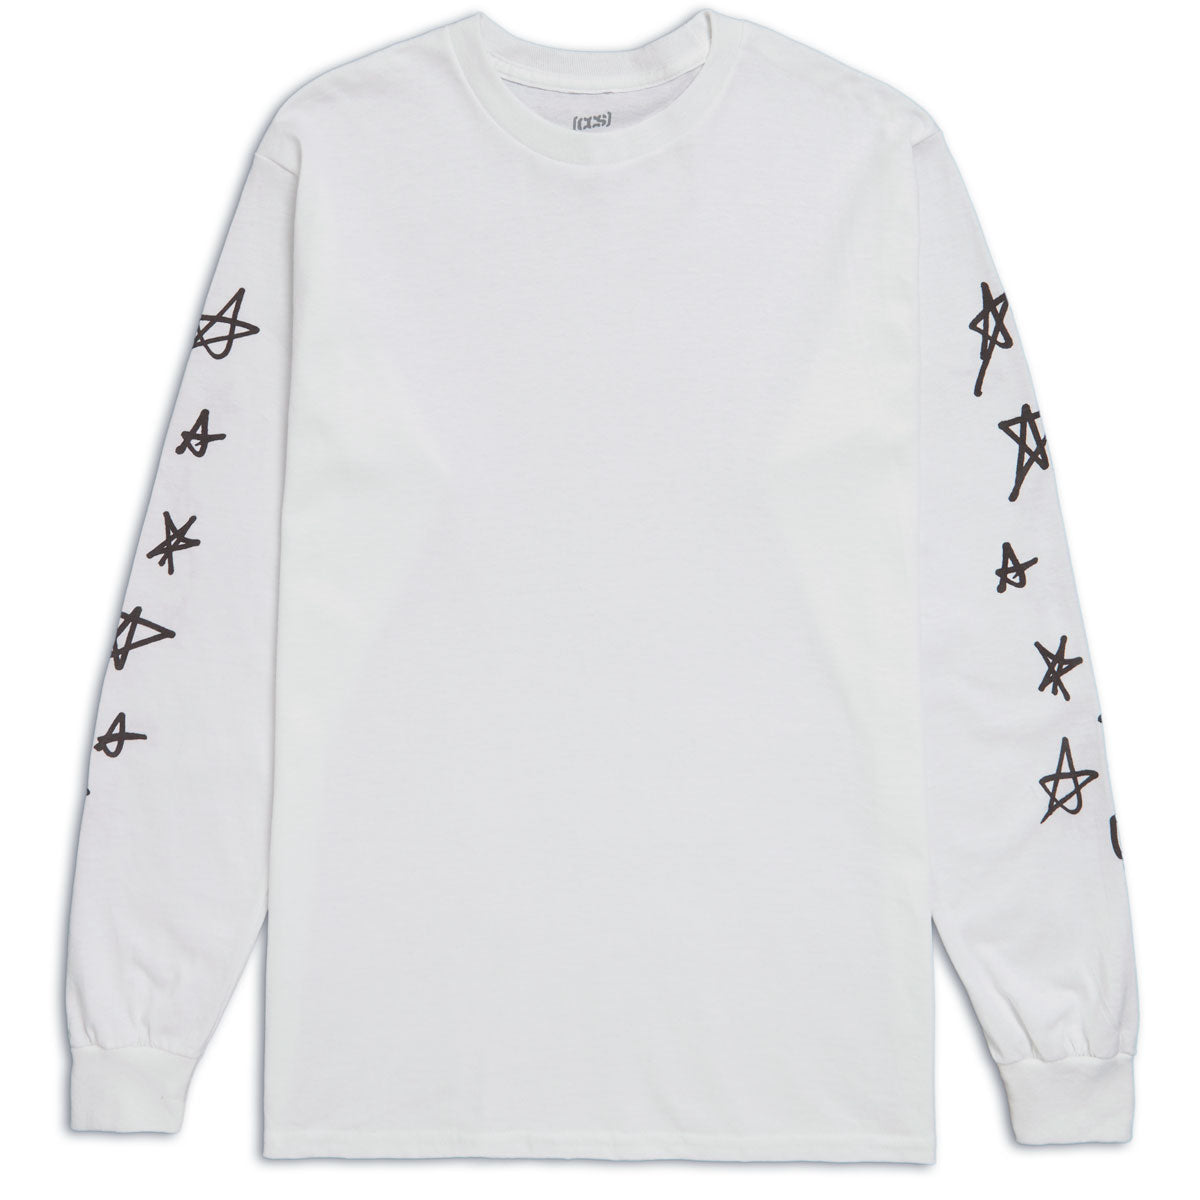 CCS Stars Long Sleeve T-Shirt - White/Black - LG image 1